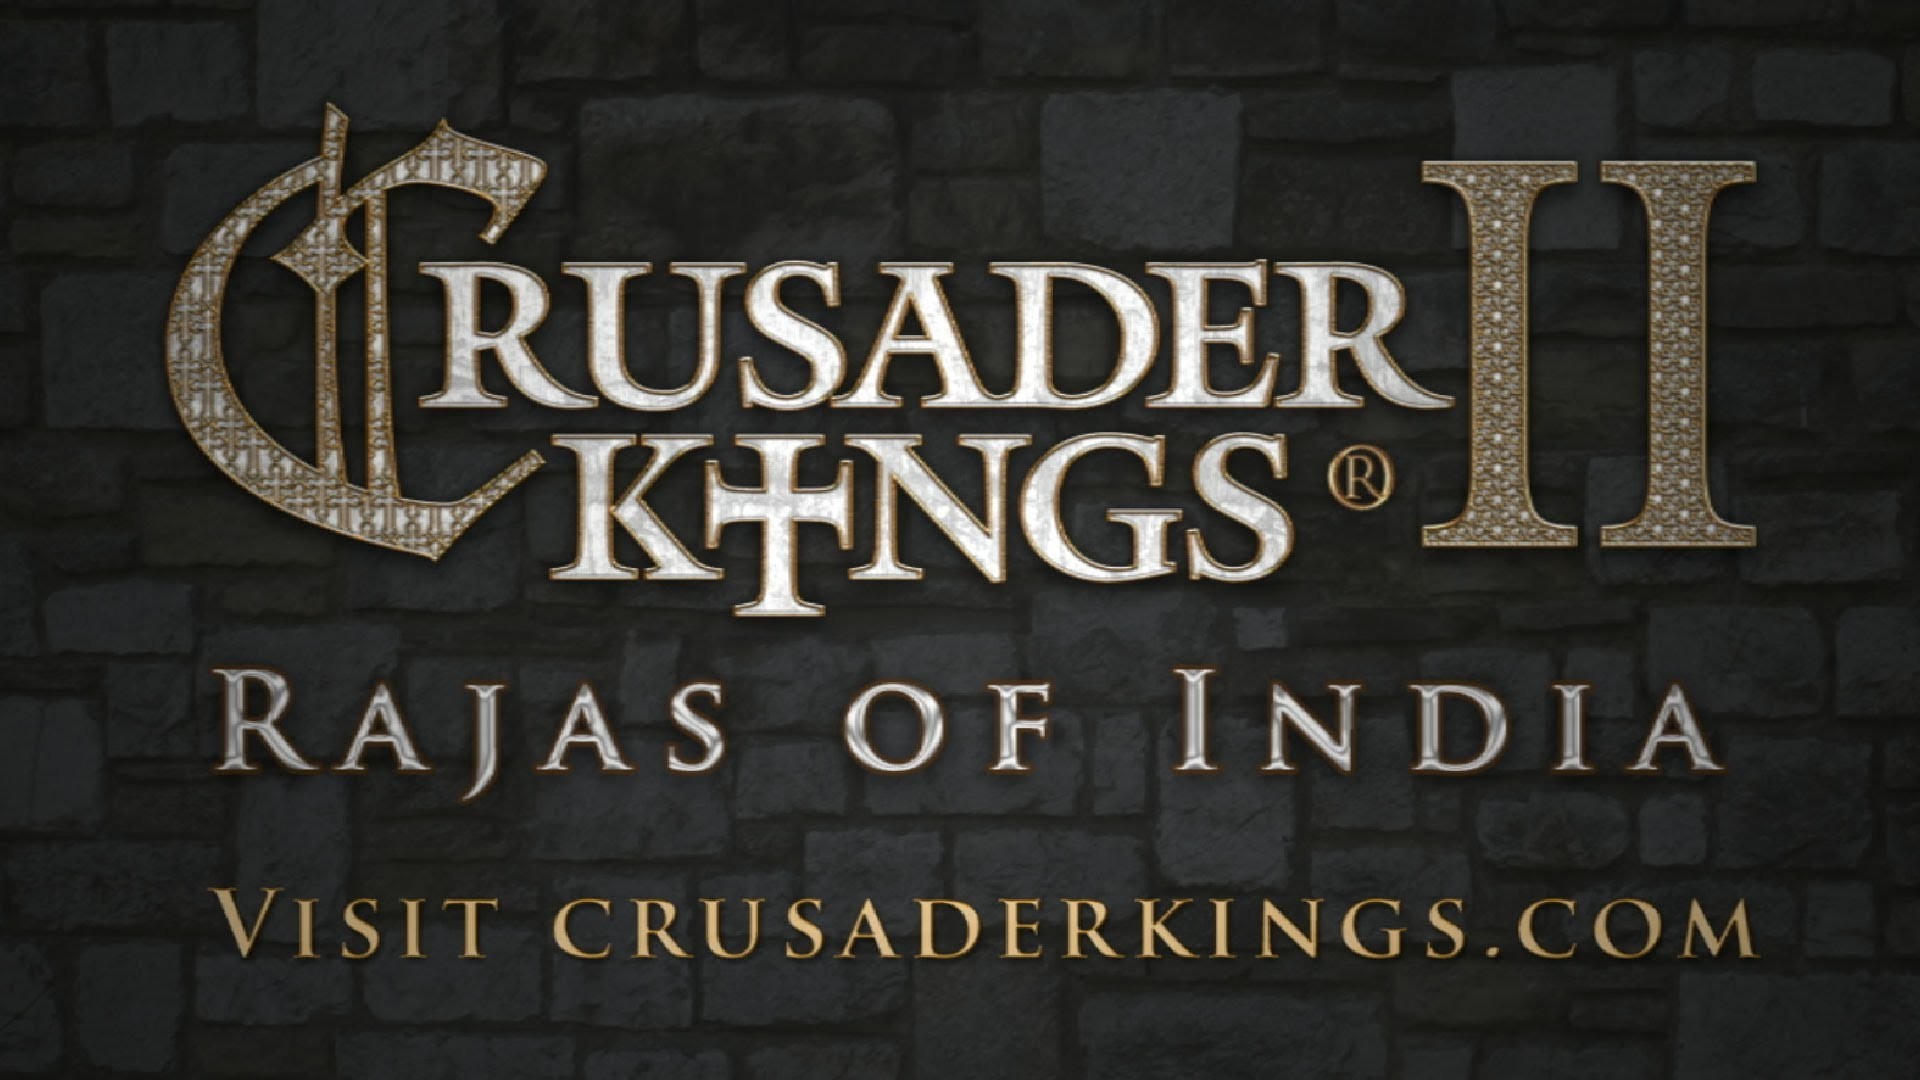 Crusader Kings II Rajas of India – Reveal Teaser